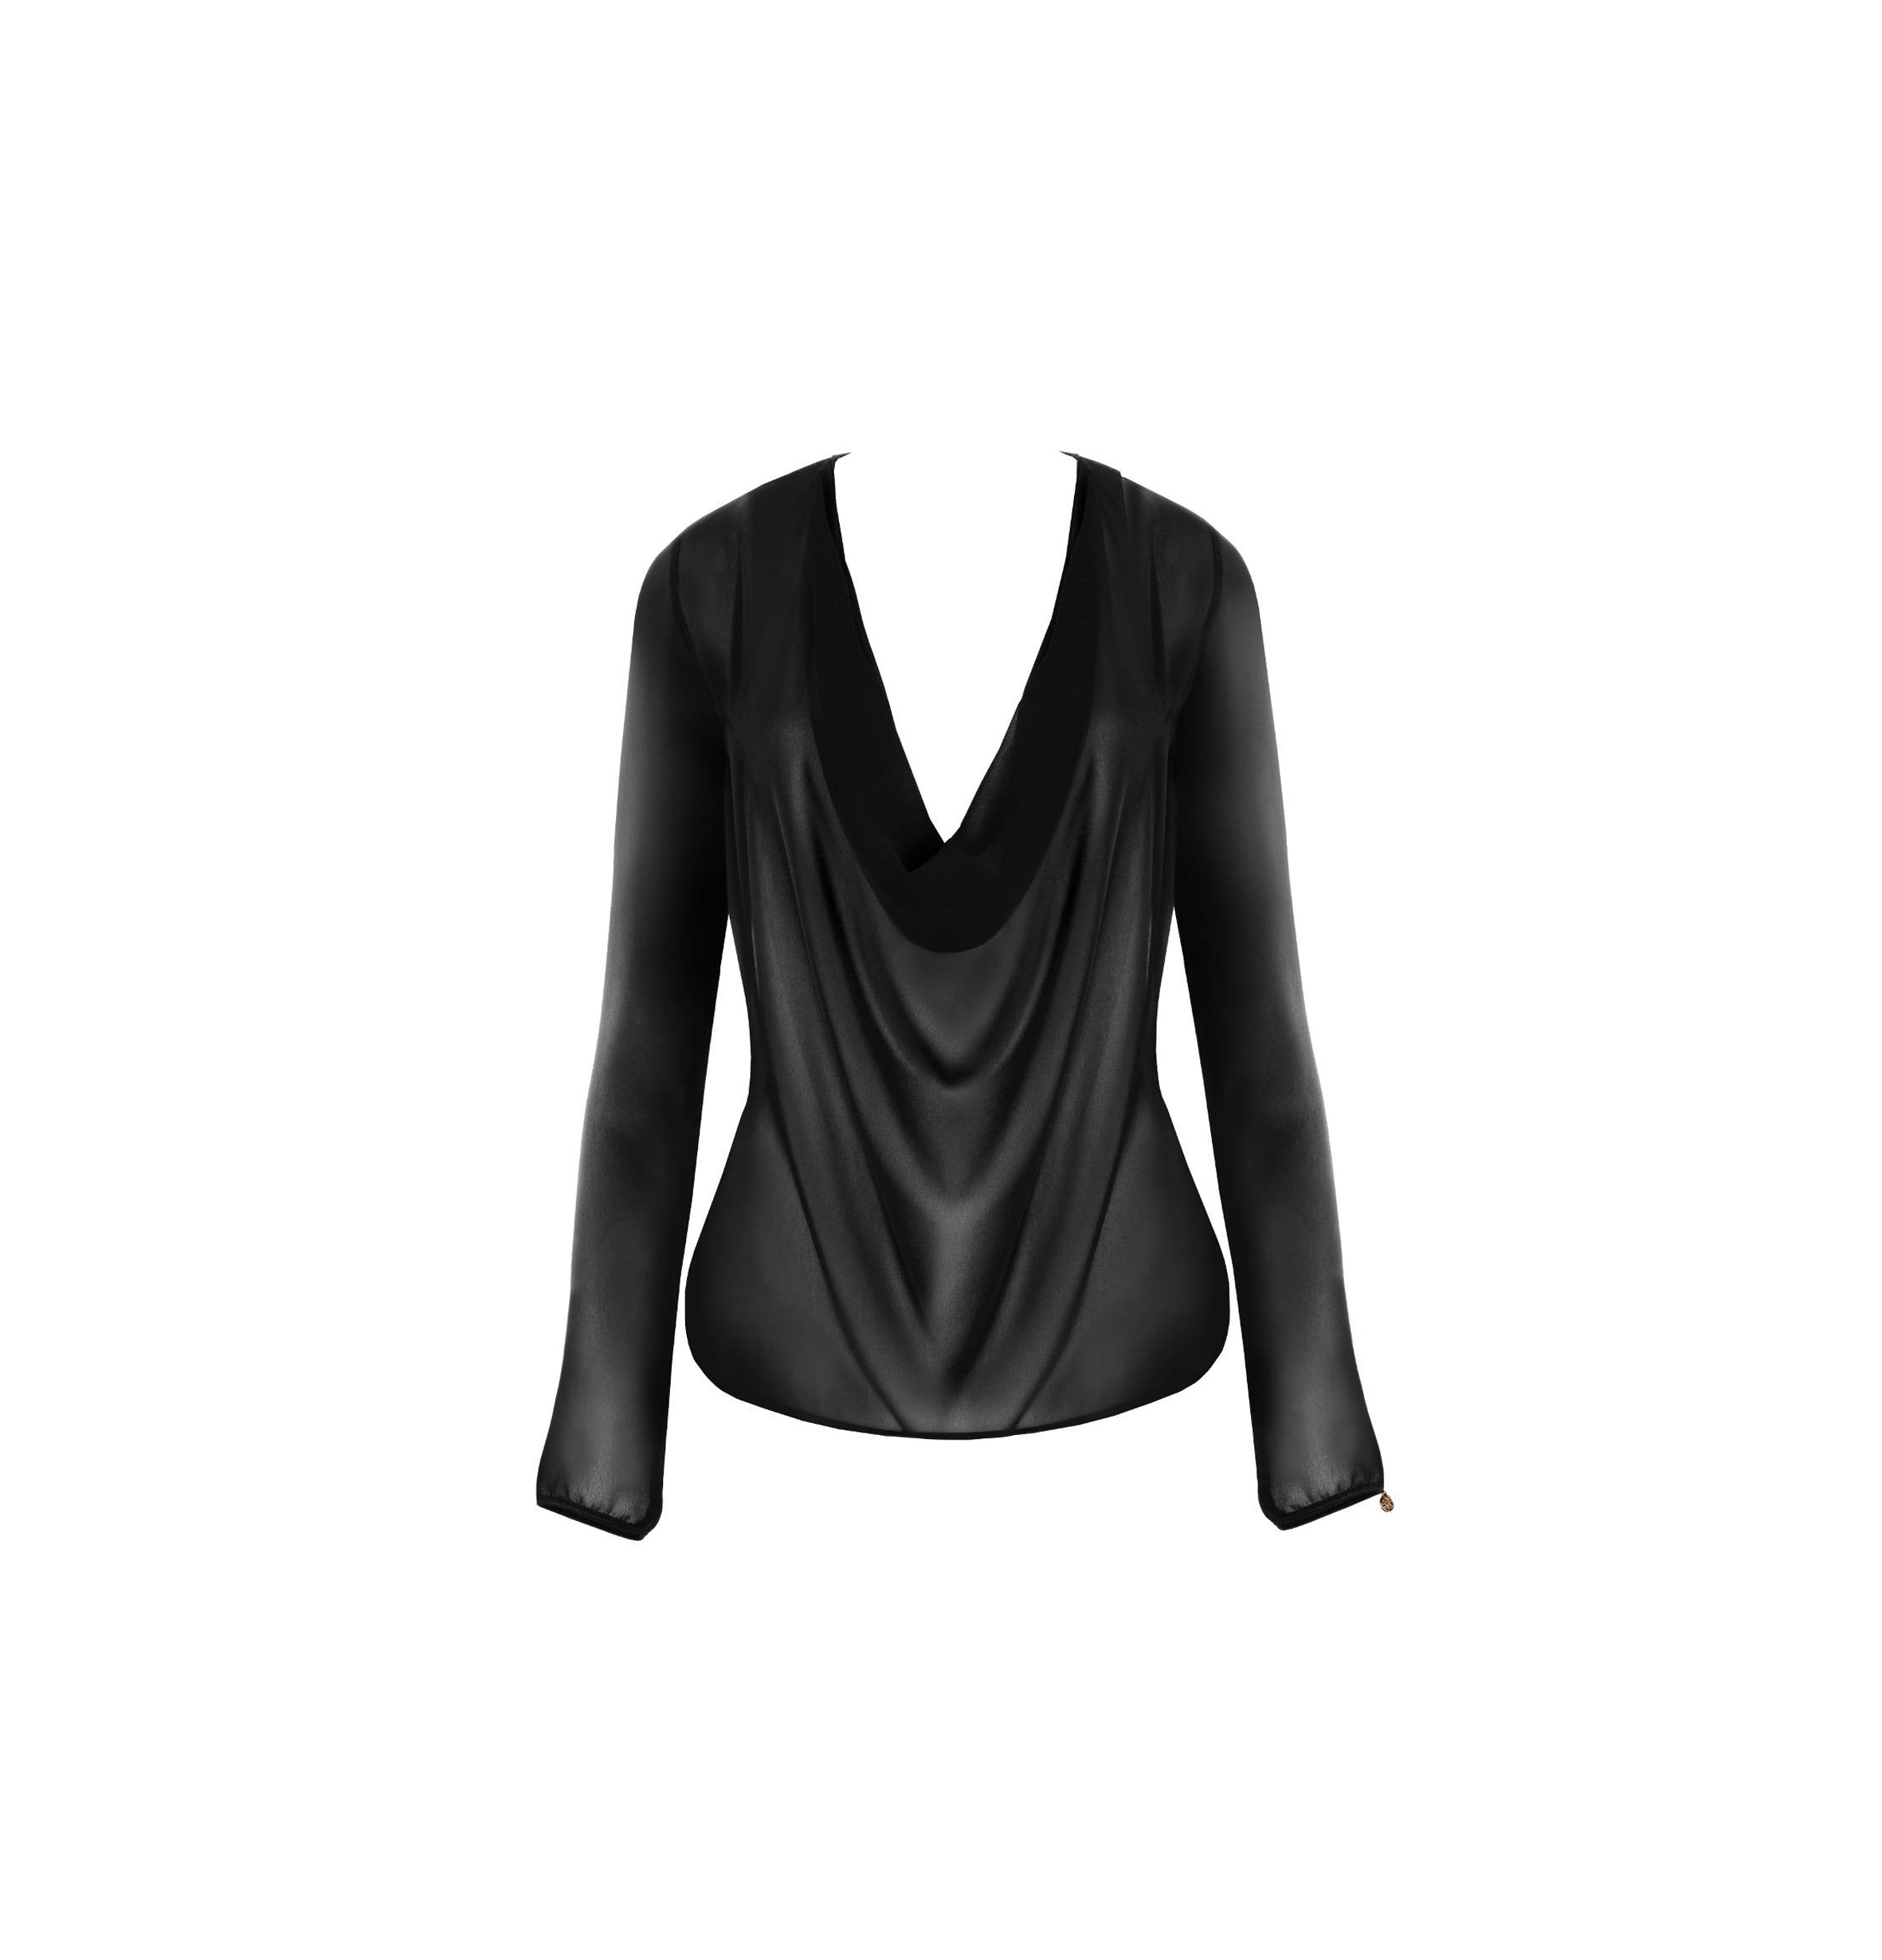 schwarze, transparente Bluse aus Chiffon mit längen Ärmeln und tiefem Wasserfallausschnitt